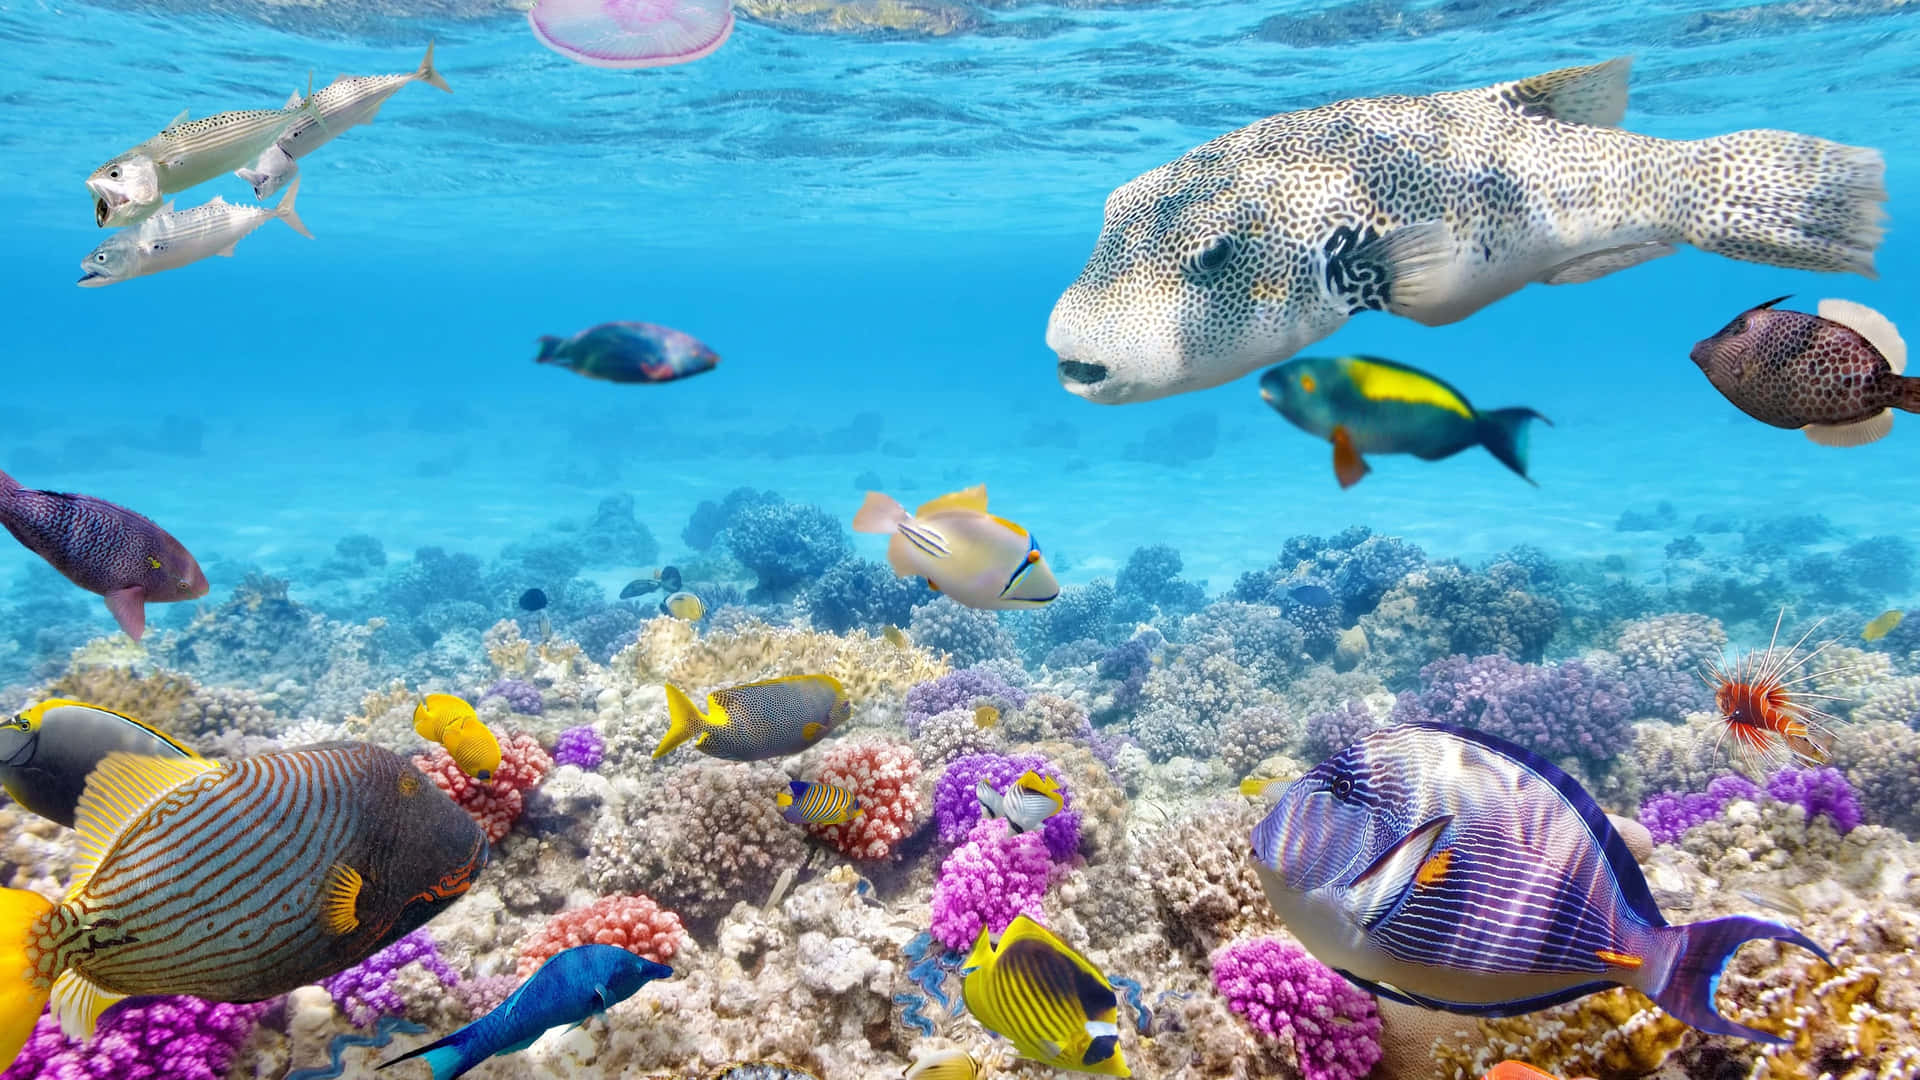 Unarrecife De Coral Colorido Con Muchos Peces Nadando En Él. Fondo de pantalla